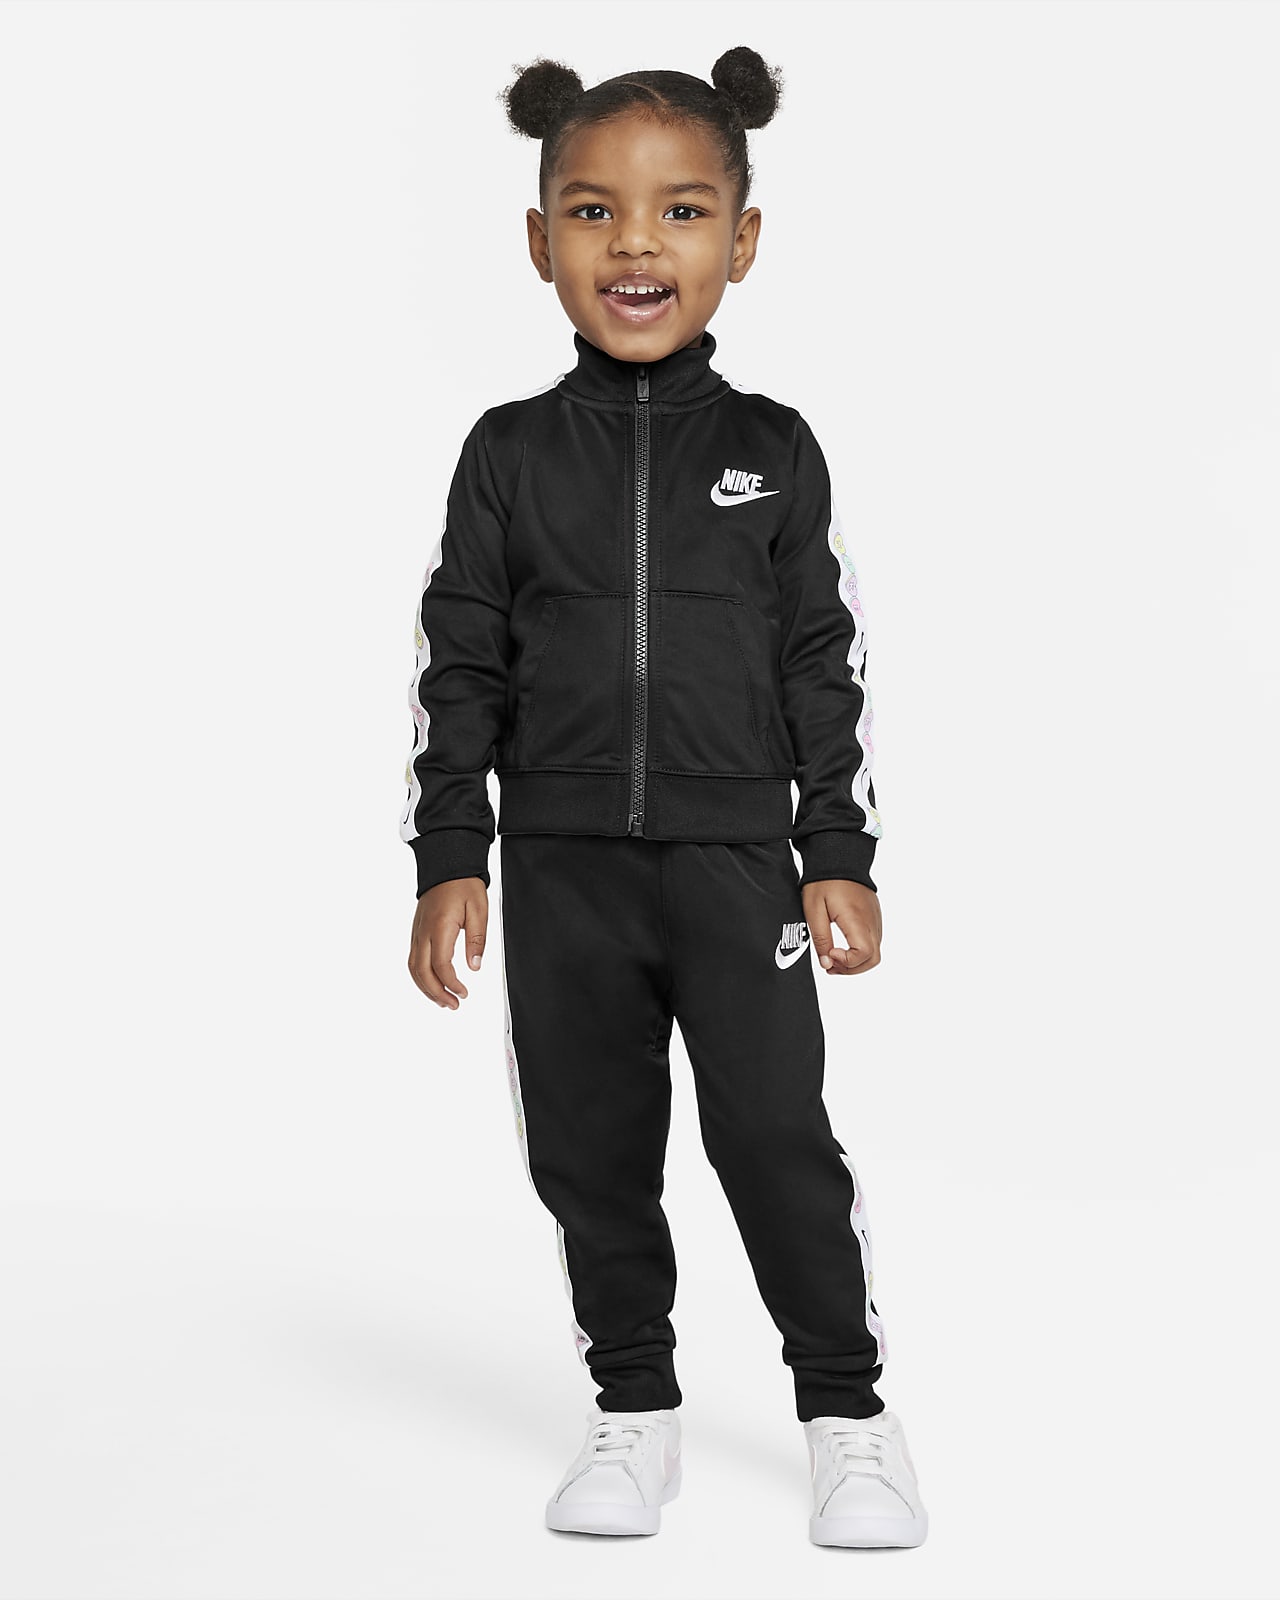 Nike Baby (12–24M) Tracksuit Set